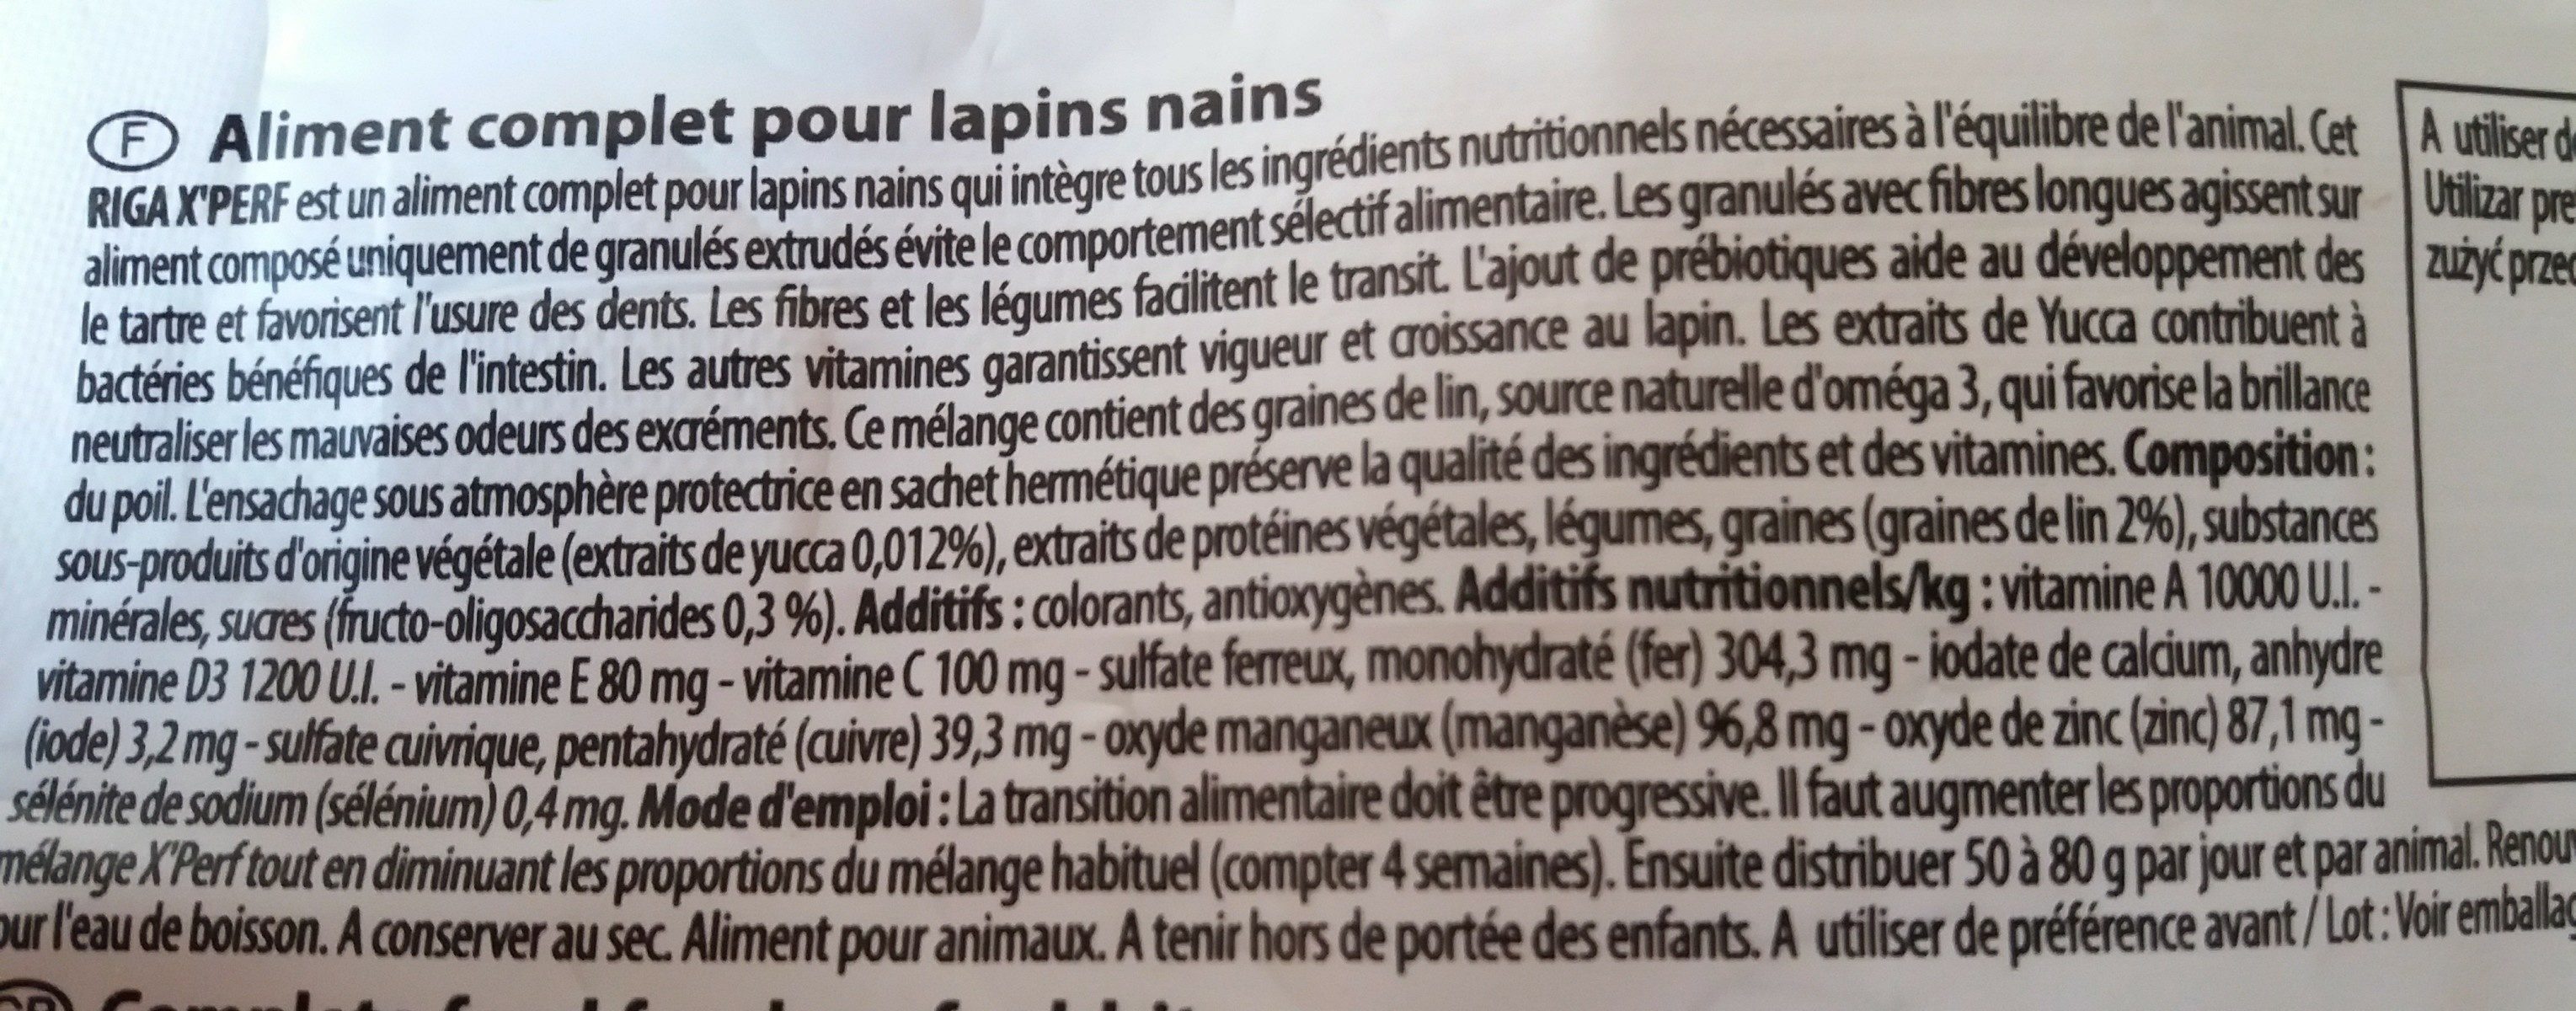 Graine pour lapin nain - Ingrédients - fr